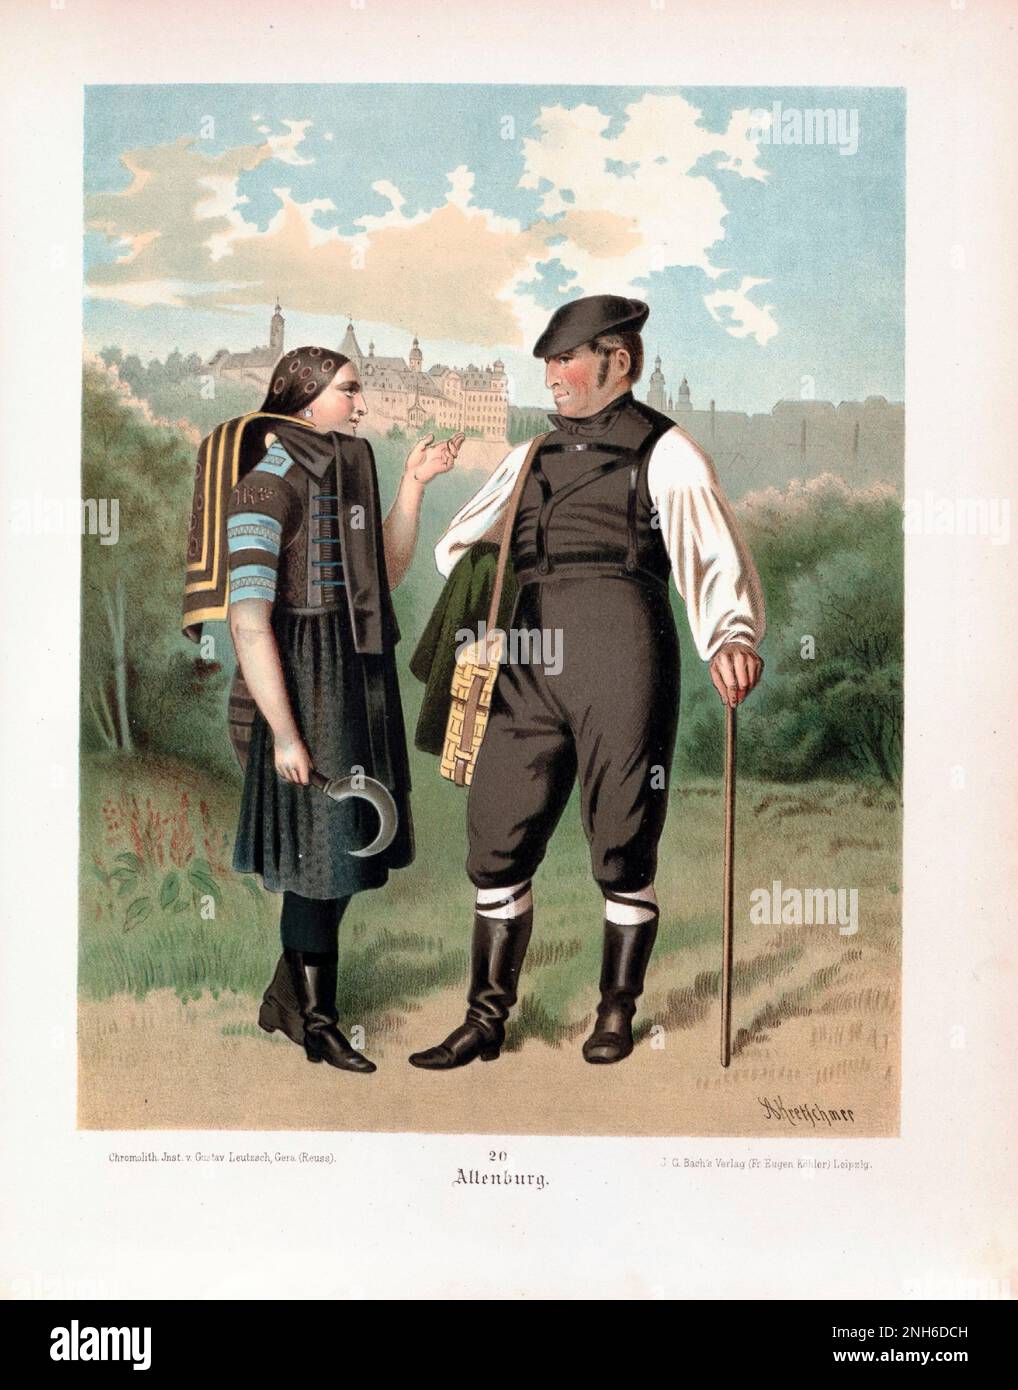 Disfraz folclórico alemán. Altenburg. litografía del siglo 19th. Foto de stock